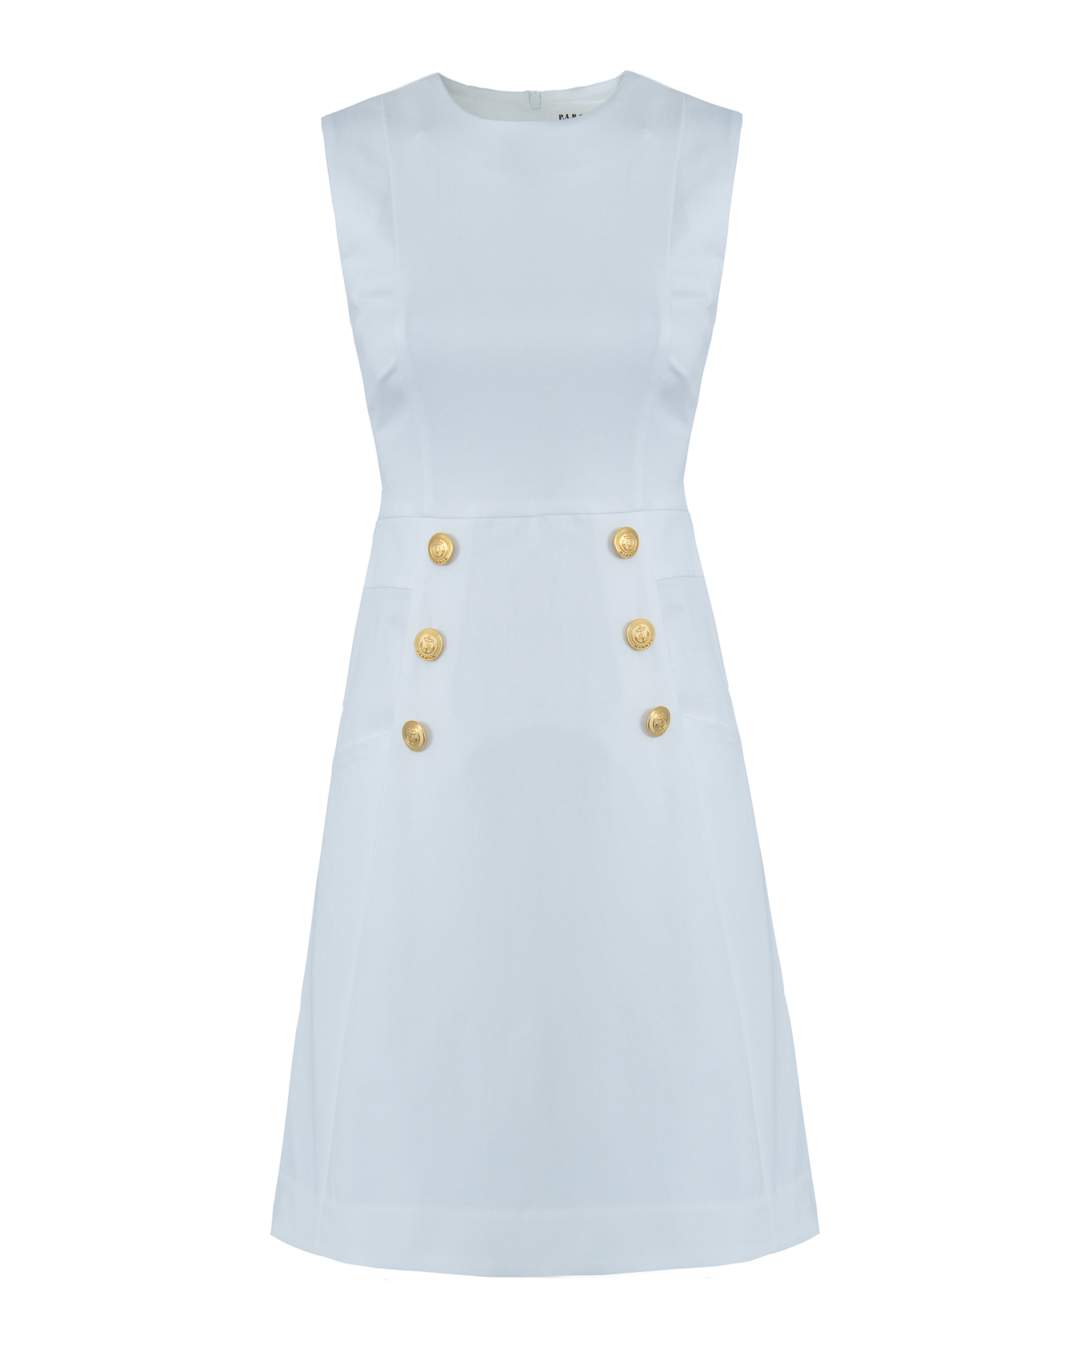 Платье женское P.A.R.O.S.H. CYBERYD72491G белое XS